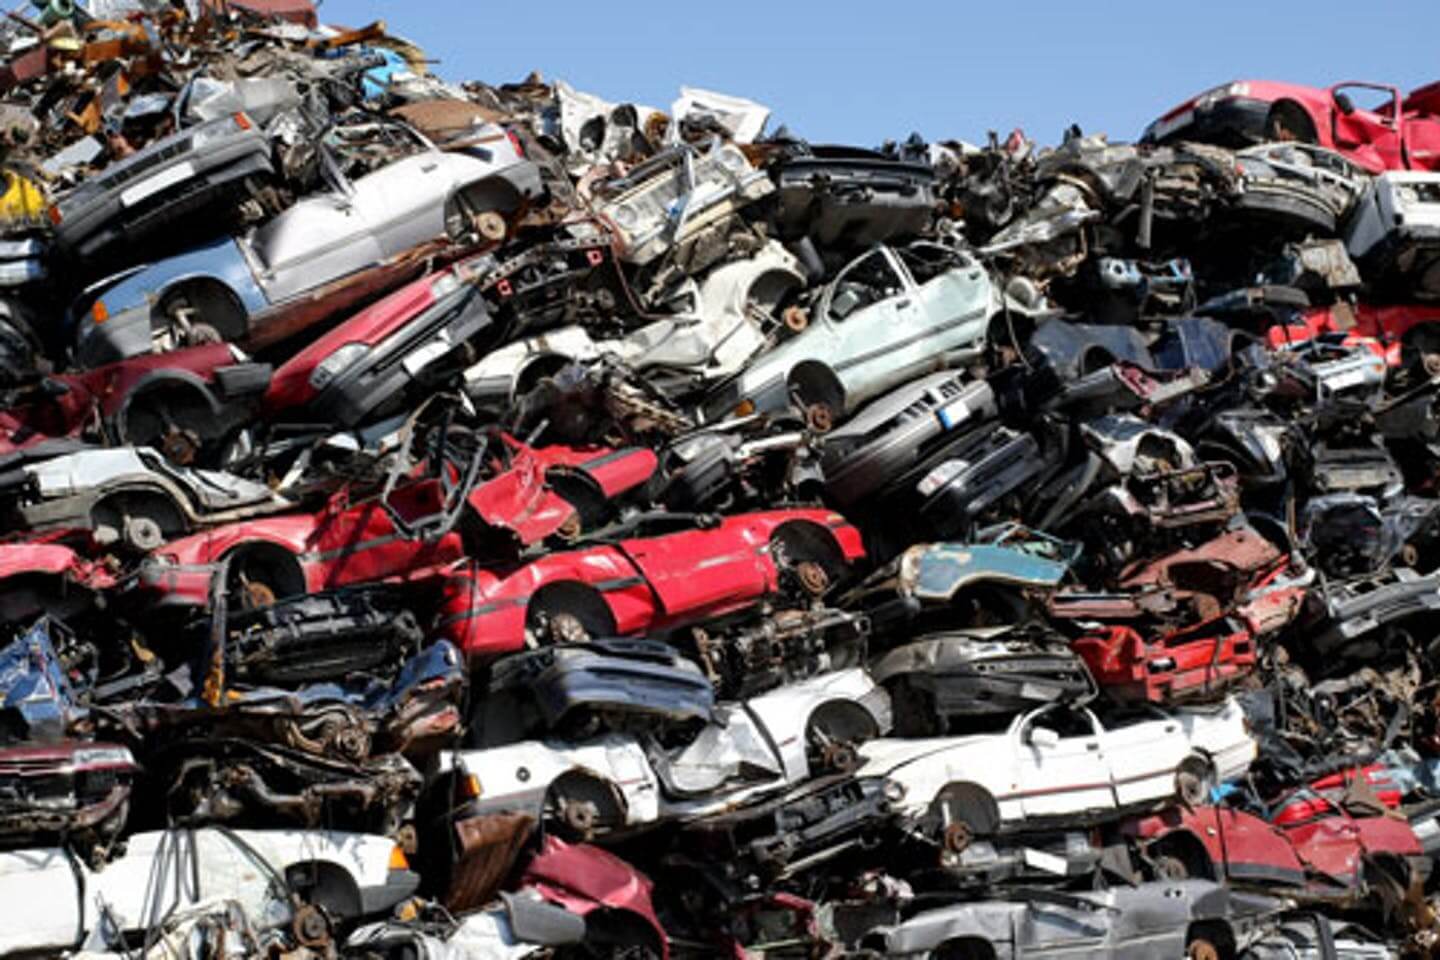 car wrecking yard disposal